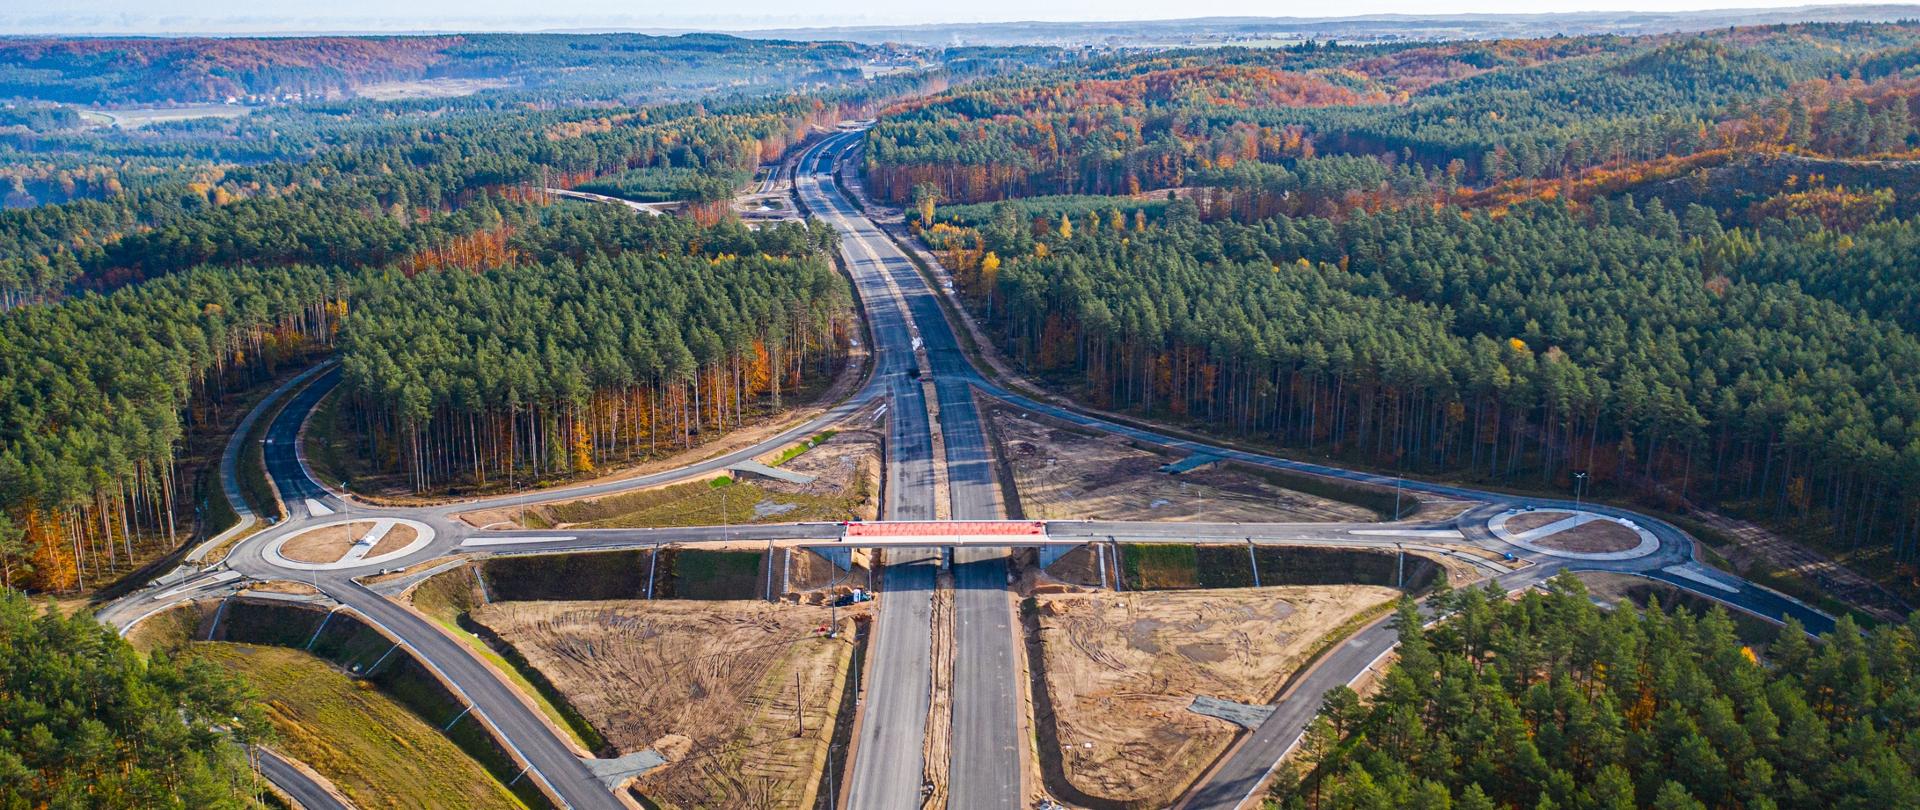 Zdjęcie przedstawia widok z lotu ptaka na budowany węzeł drogi ekspresowej S6 w Strzebielinie. W centrum są jezdnie główne drogi ekspresowej, nad nimi wiadukt, a po bokach łącznice i ronda łączące trasę z drogami poprzecznymi.